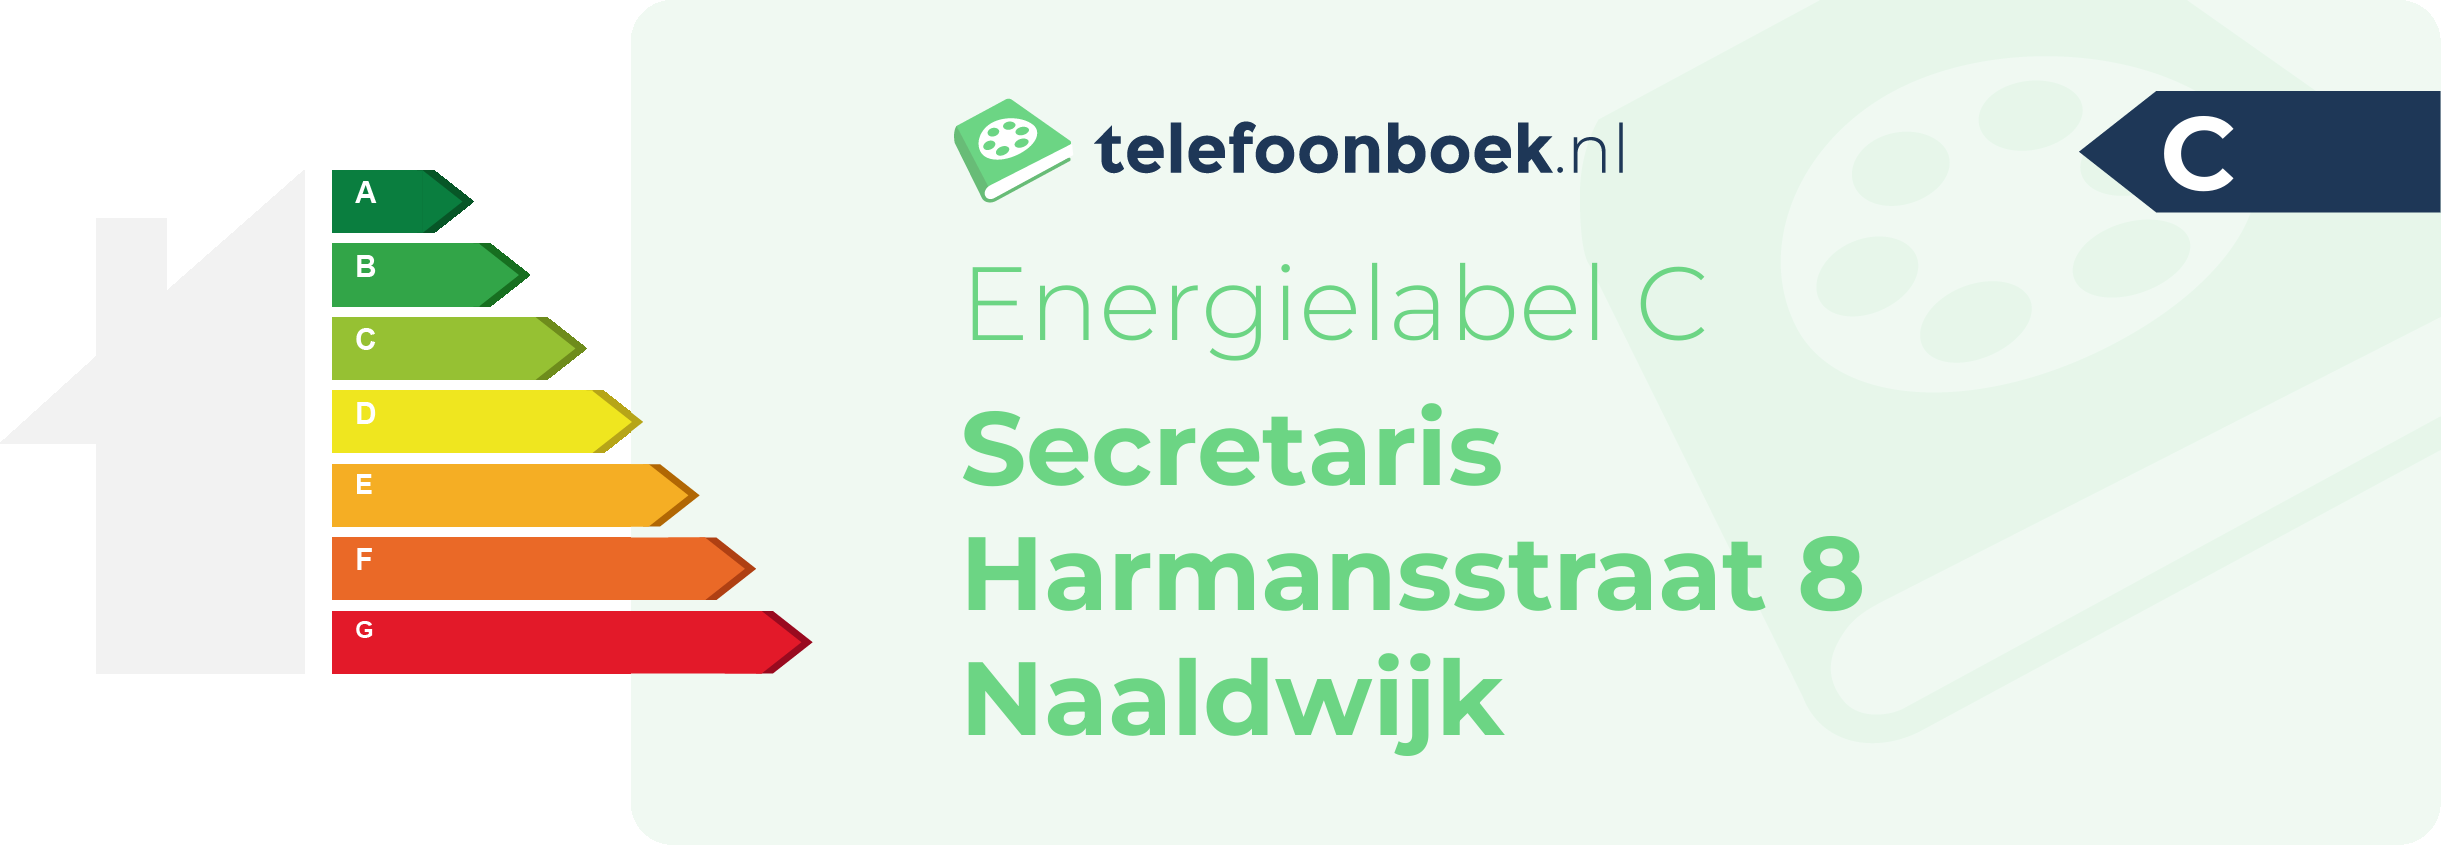 Energielabel Secretaris Harmansstraat 8 Naaldwijk